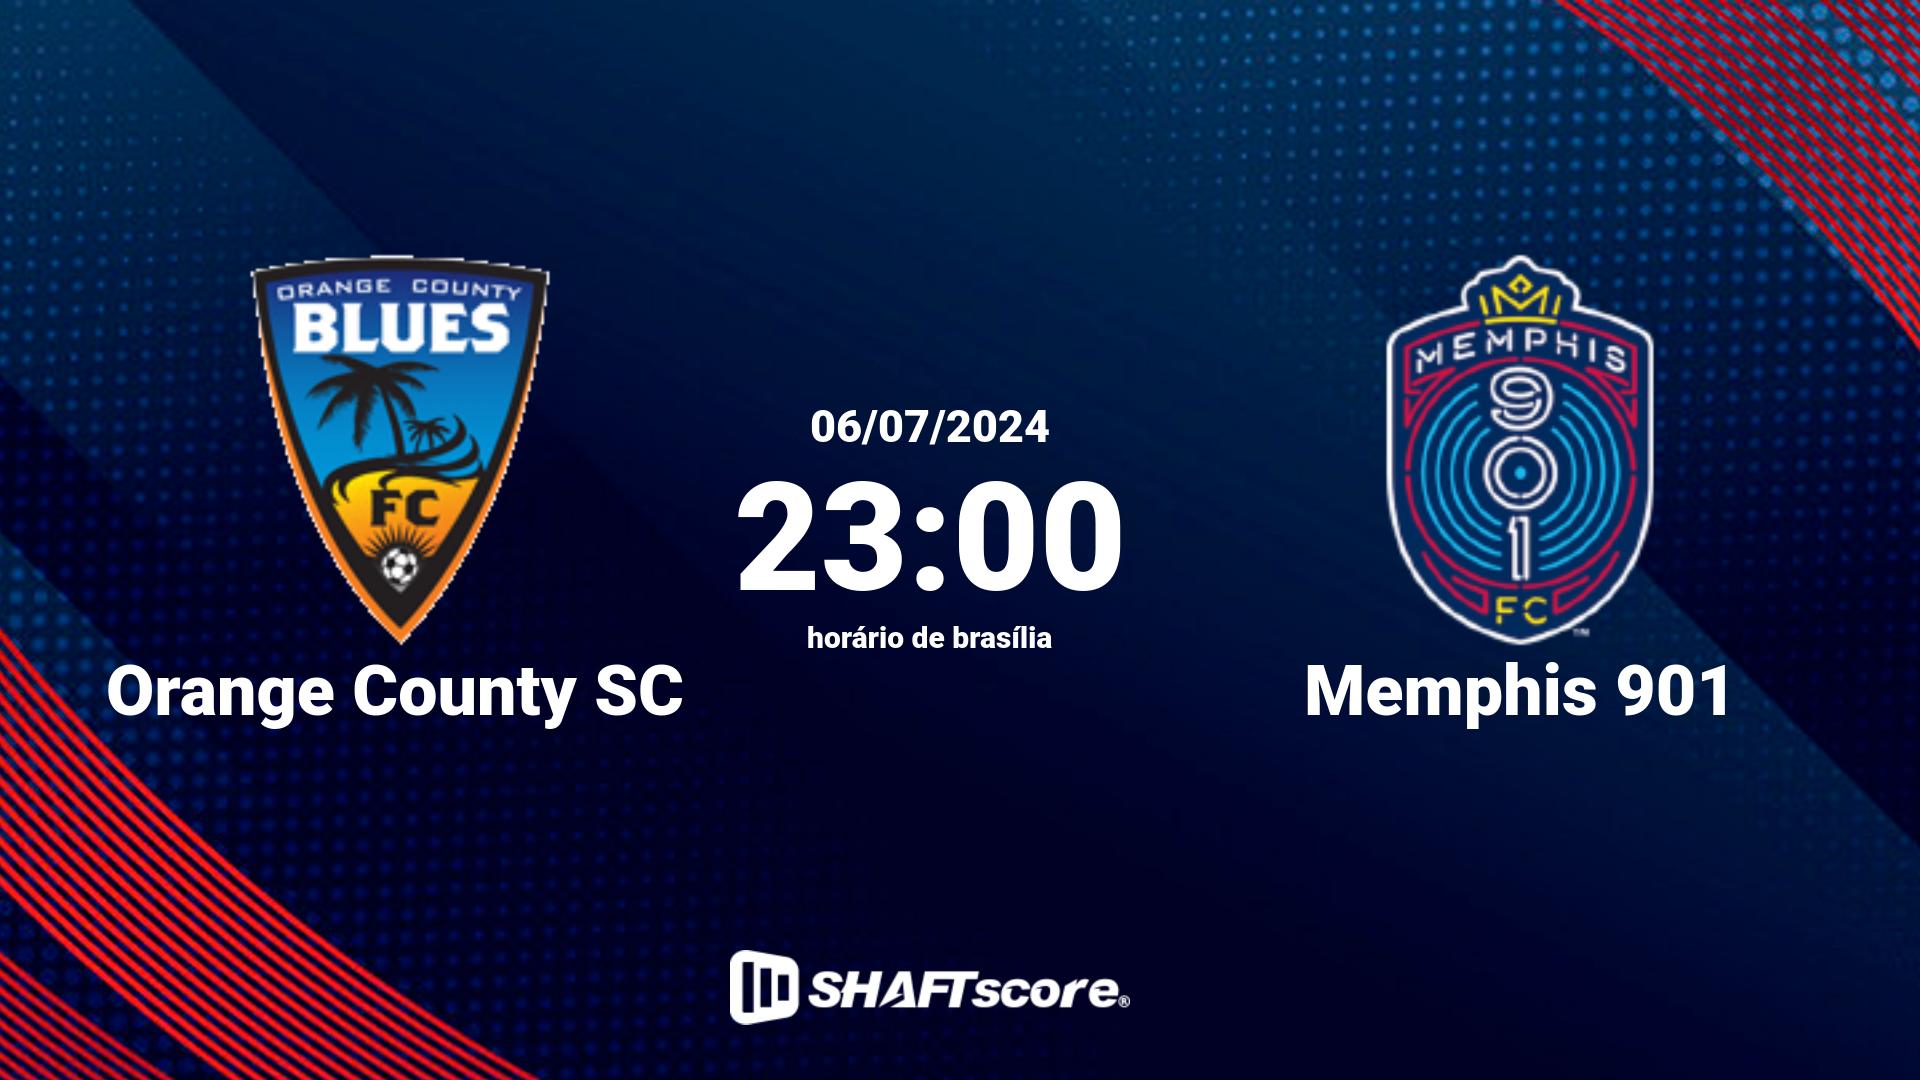 Estatísticas do jogo Orange County SC vs Memphis 901 06.07 23:00